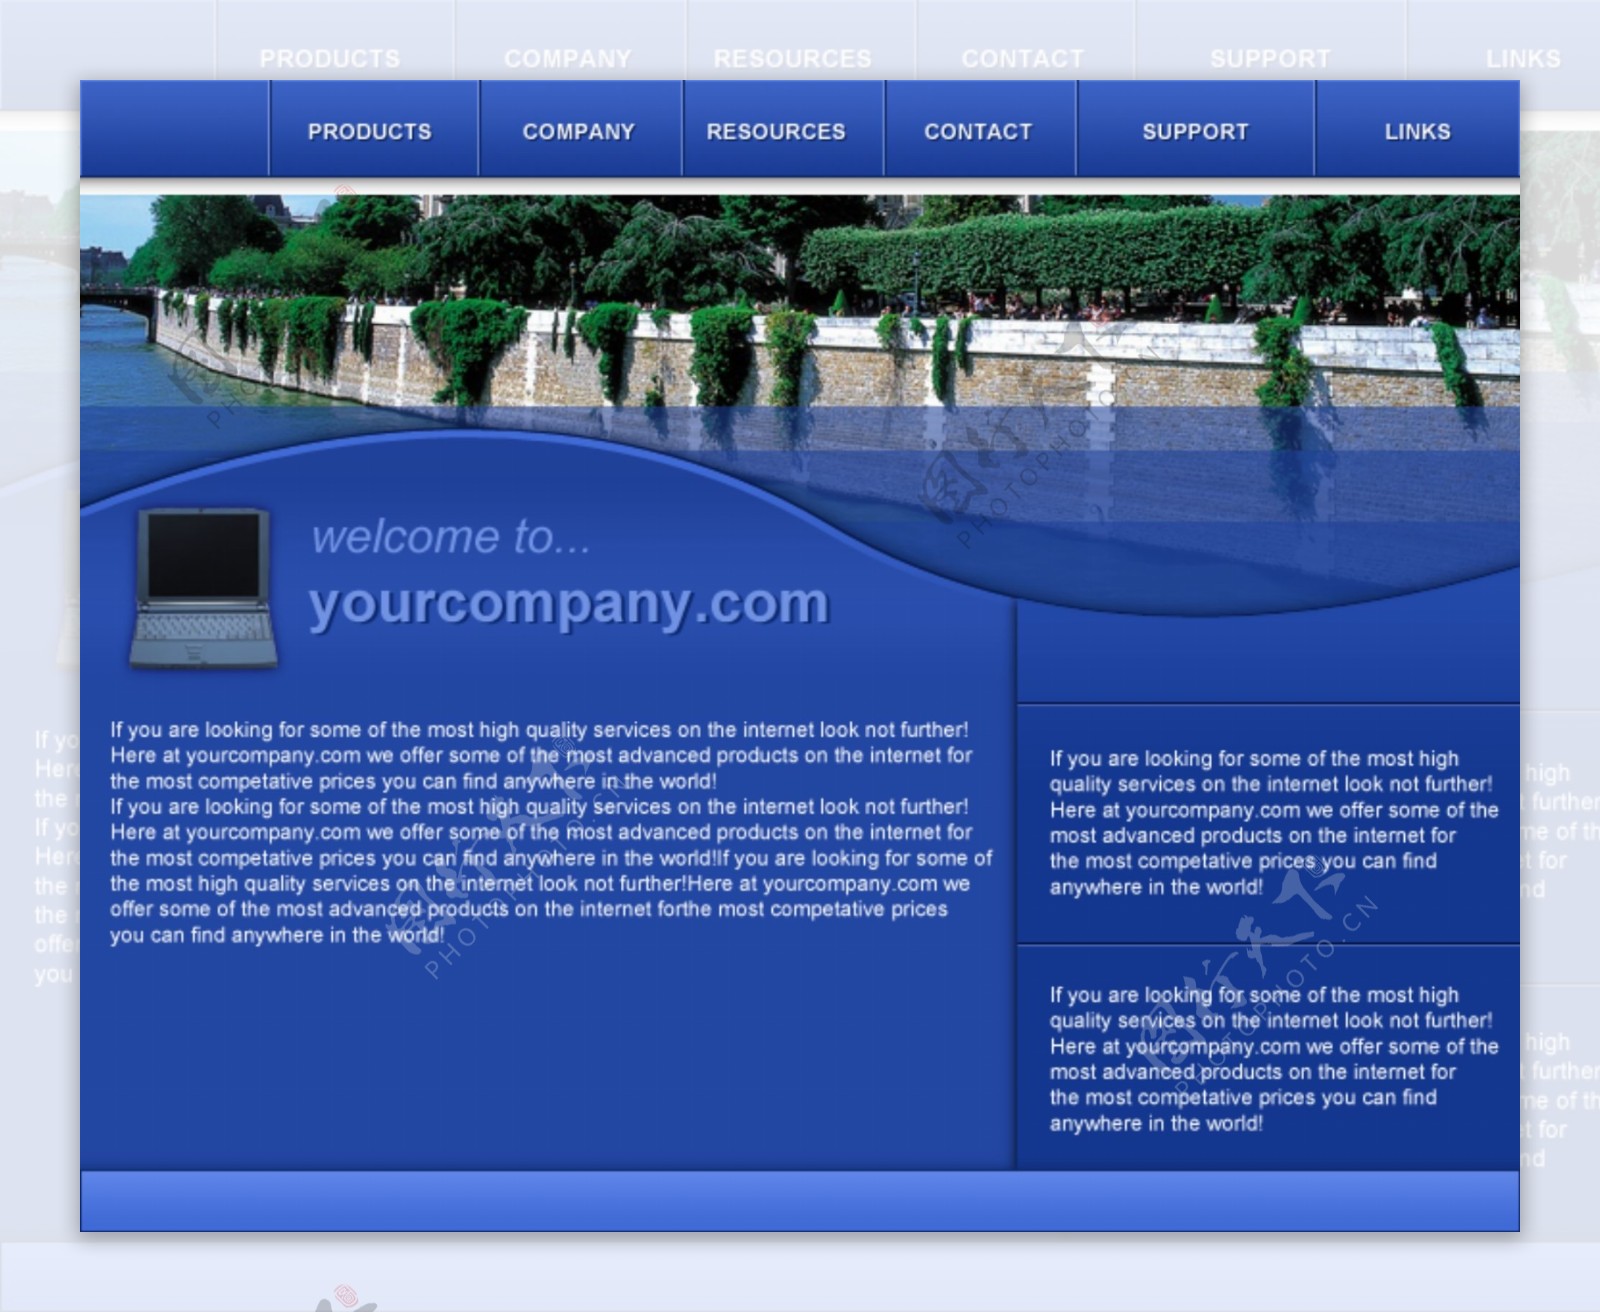 蓝色网页模板